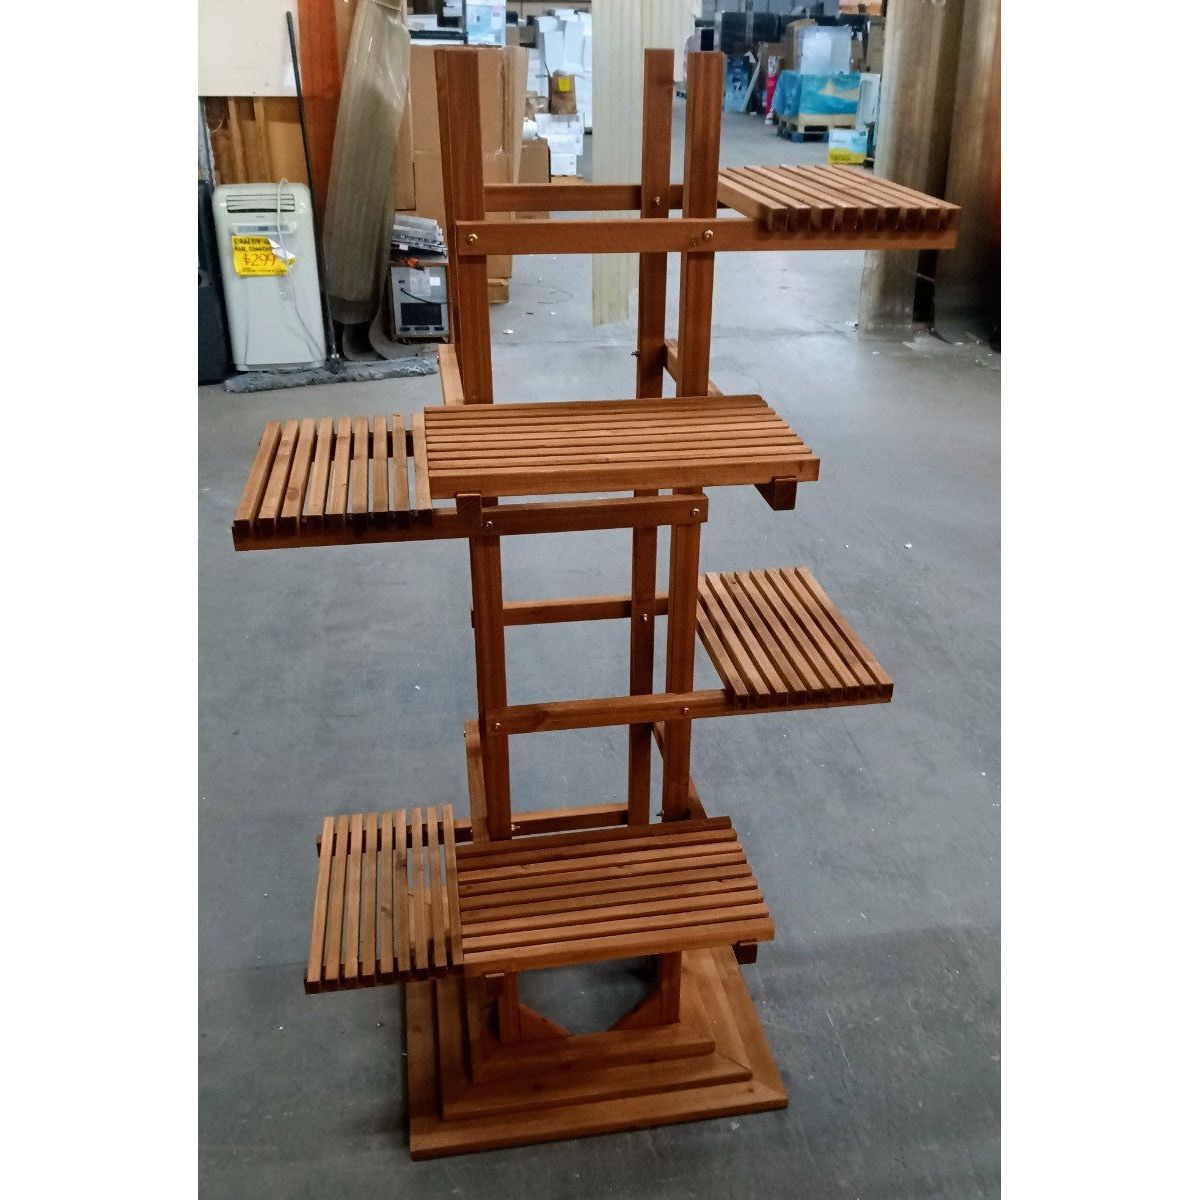 Leisure Season 6-Tier Wooden Pedestal Indoor Outdoor Plant Stand PS6116